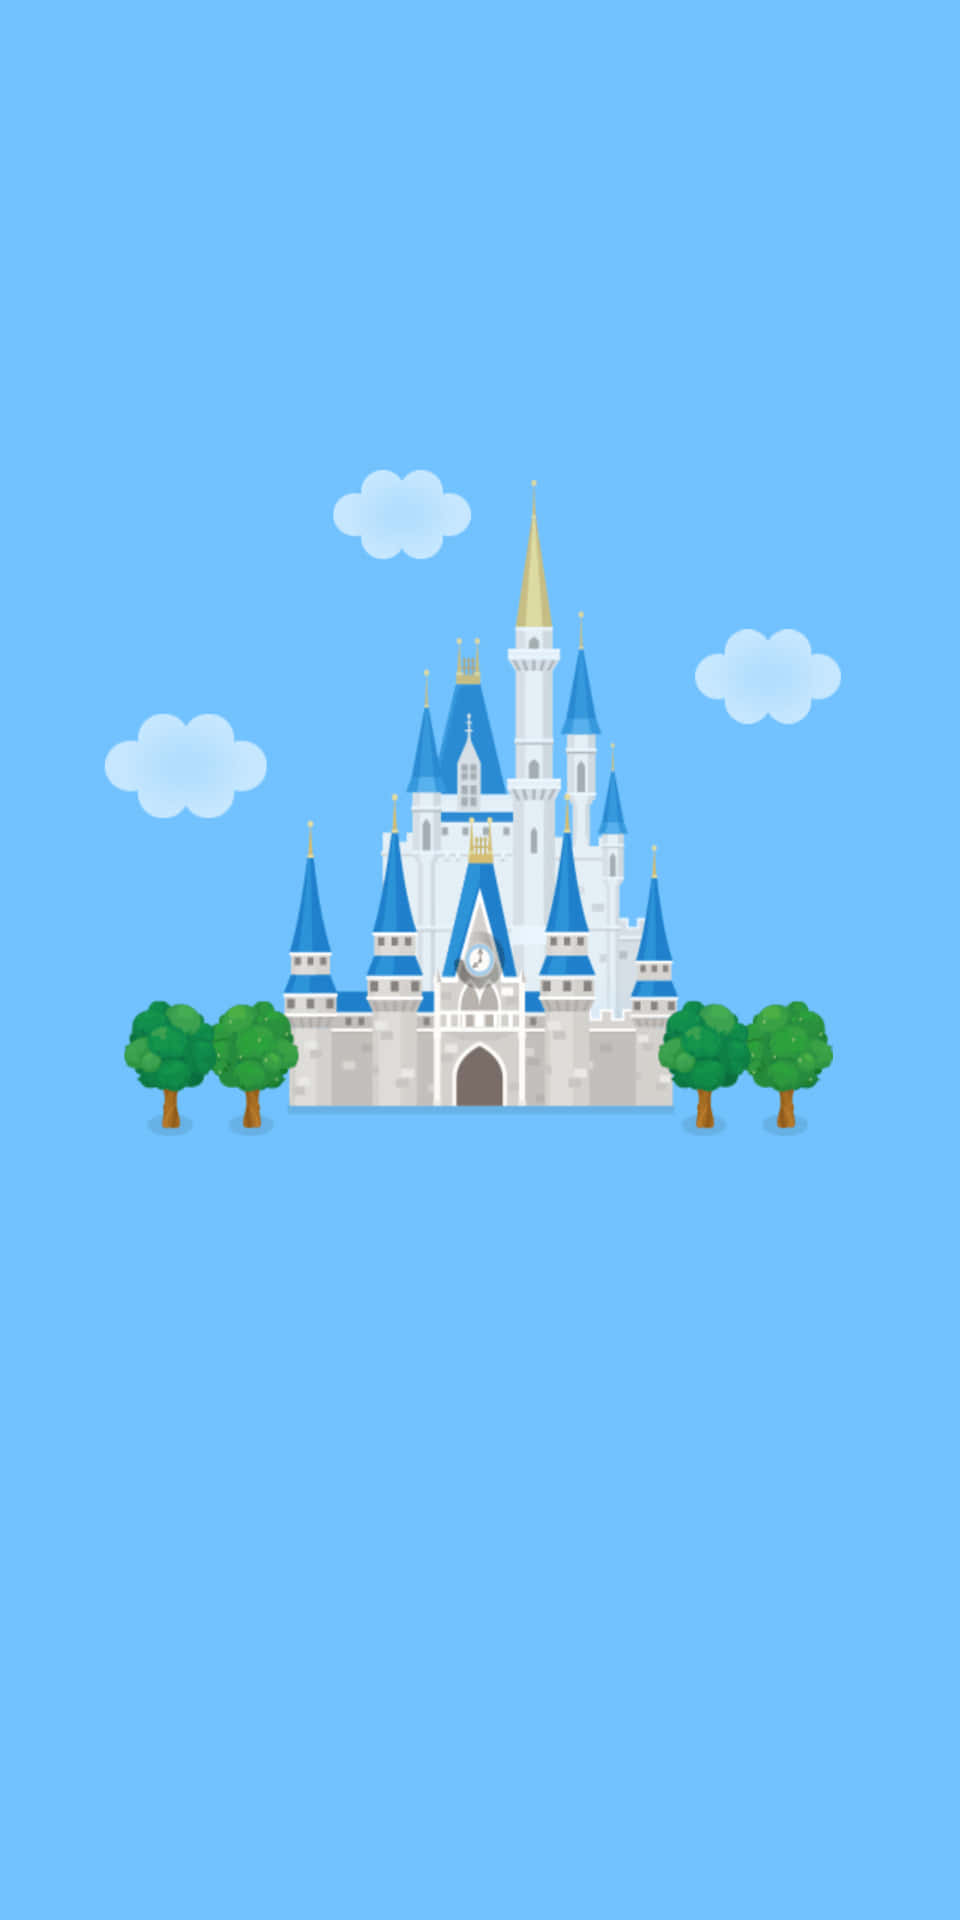 ¡disfrutadel Color Y La Imaginería De Disney En Tu Tecnología Con Pixel 3!